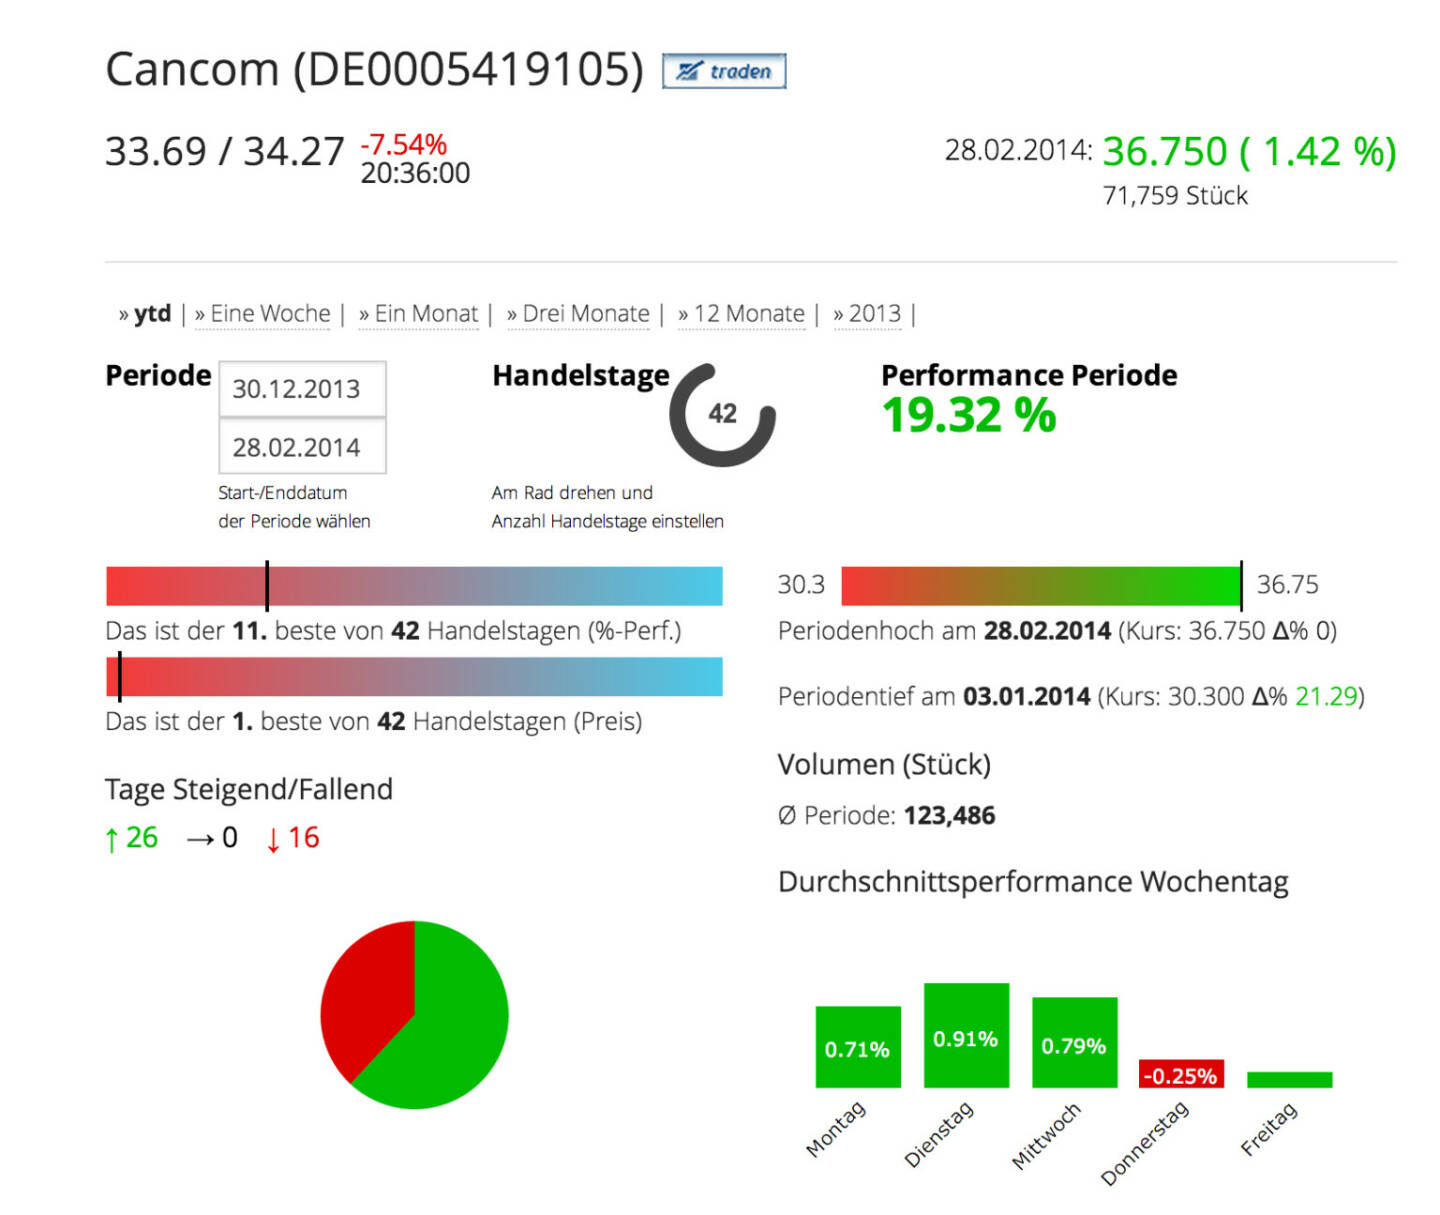 Cancom im Börse Social Network, http://boerse-social.com/launch/aktie/cancom_se